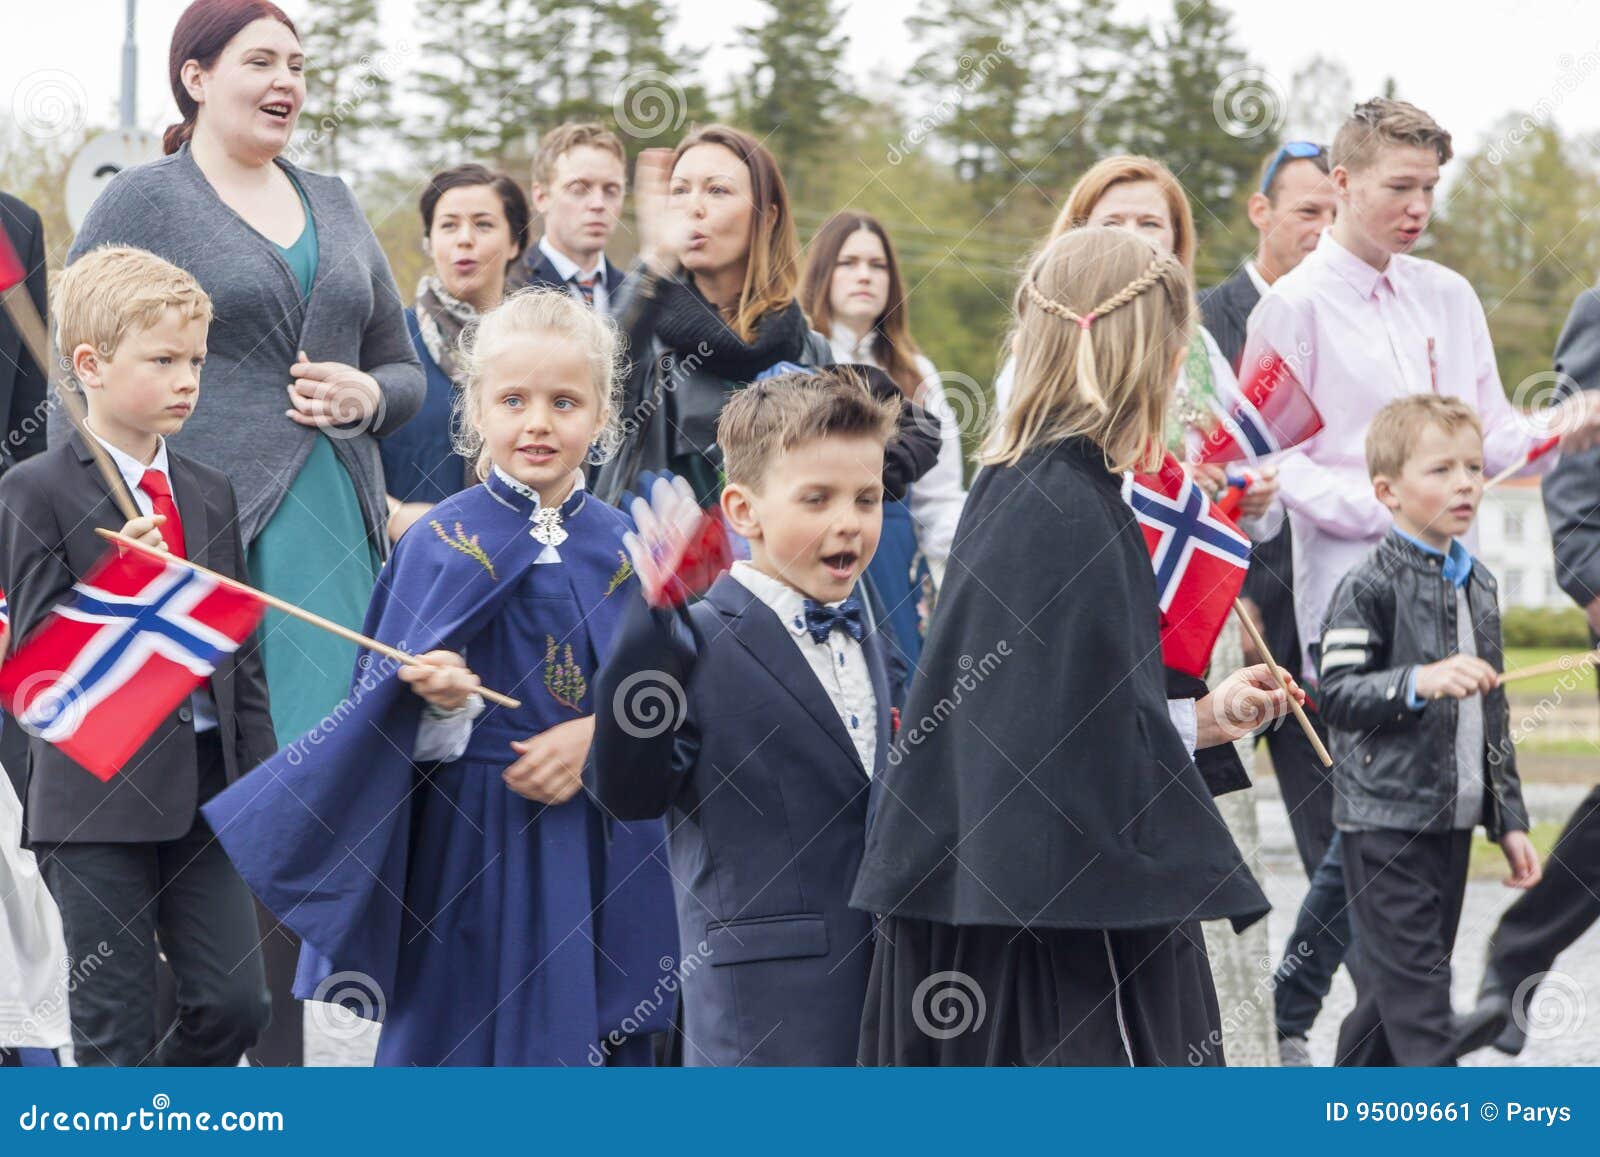 People On Parde Before School In Verdal Norway Editorial Photo Image Of Norway People